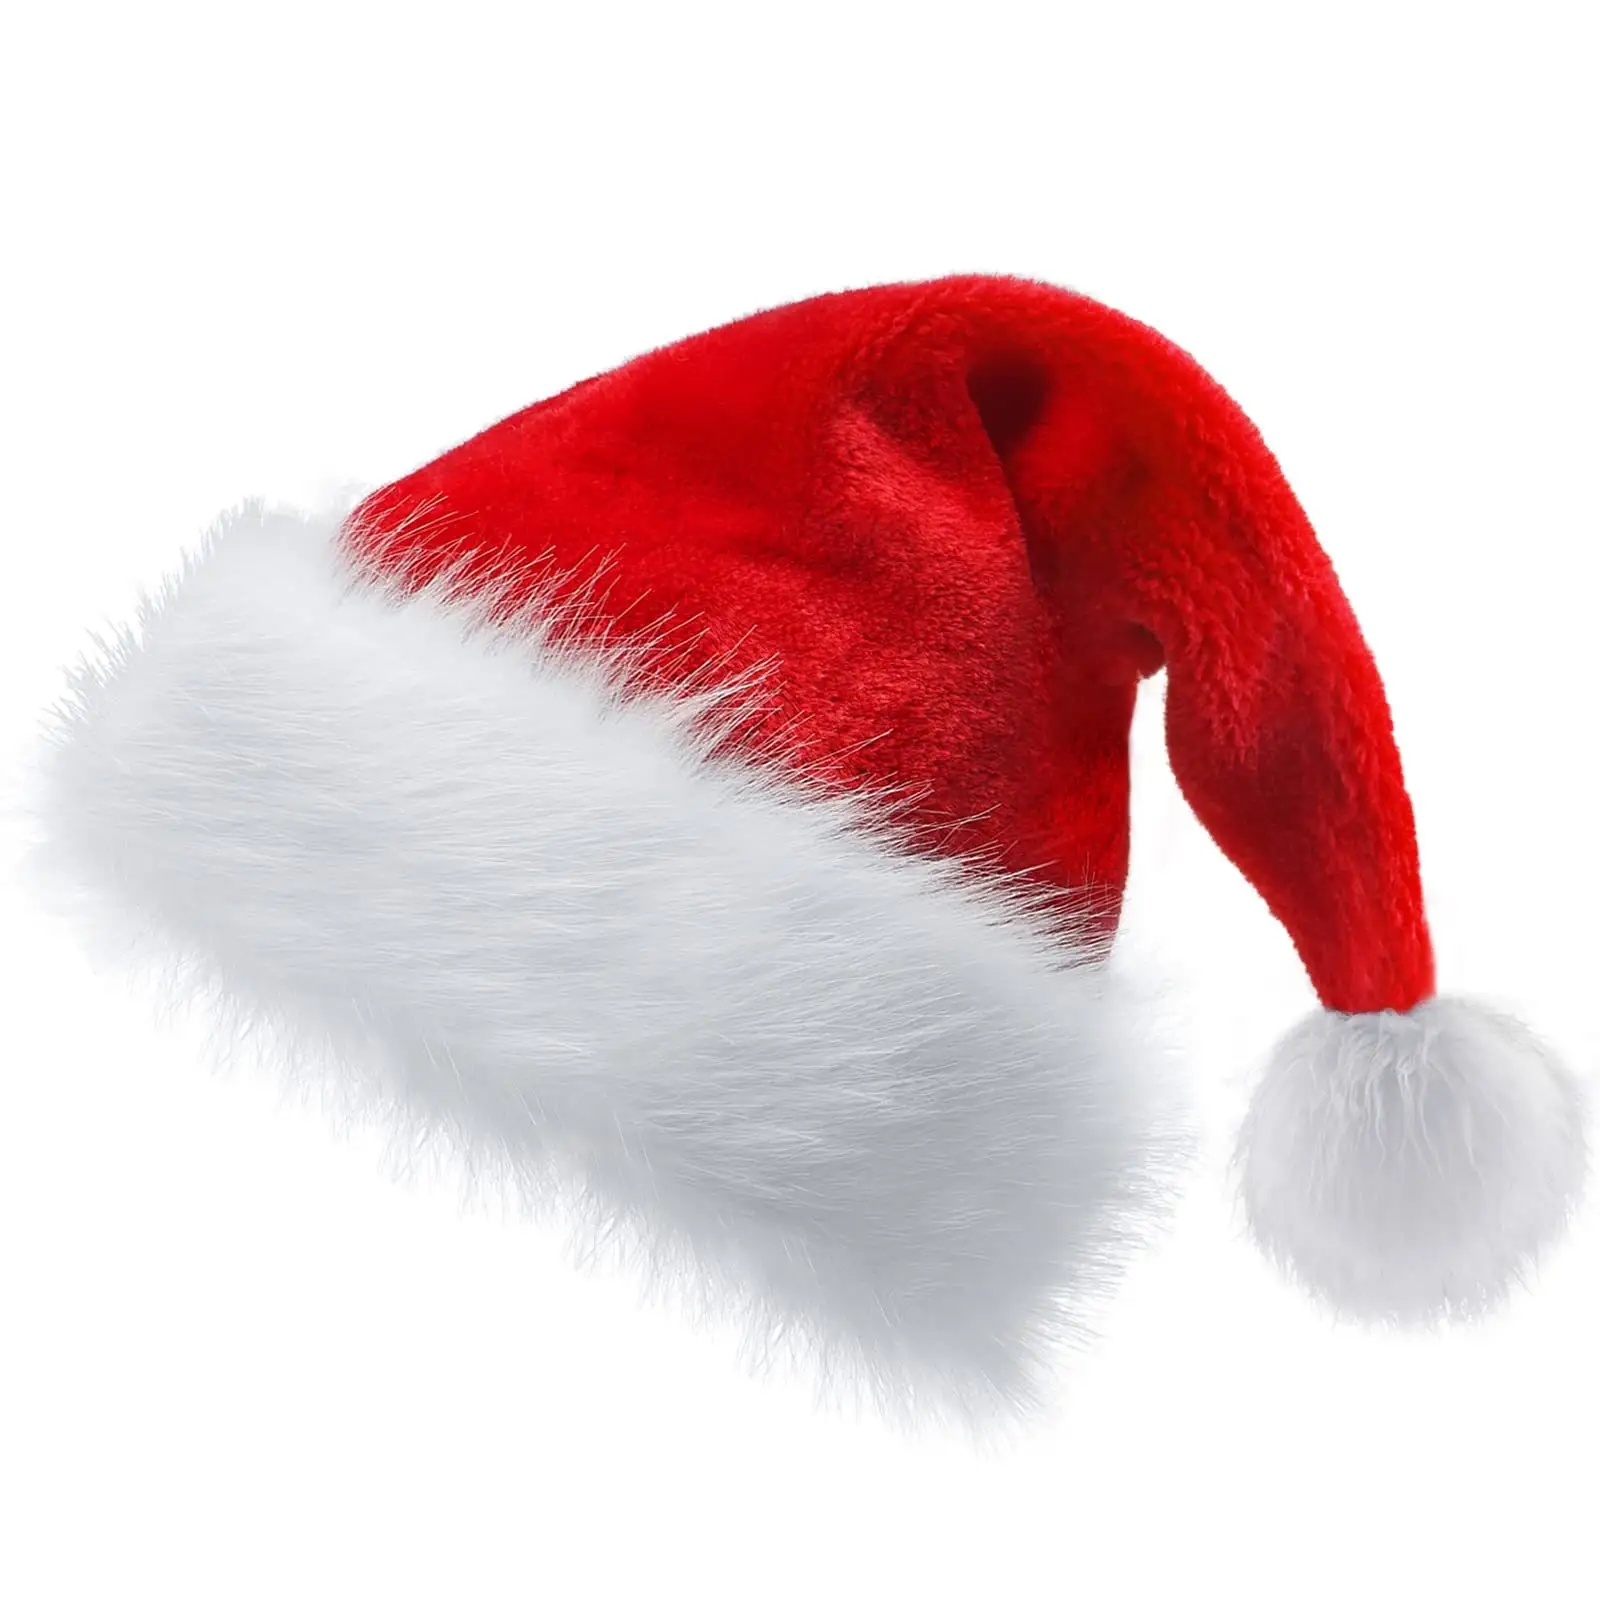 قبعة شتوية led من ouruidan للكريسماس رخيصة الثمن لتزيين الكريسماس قبعة إضاءة ليد للعام الجديد للأطفال